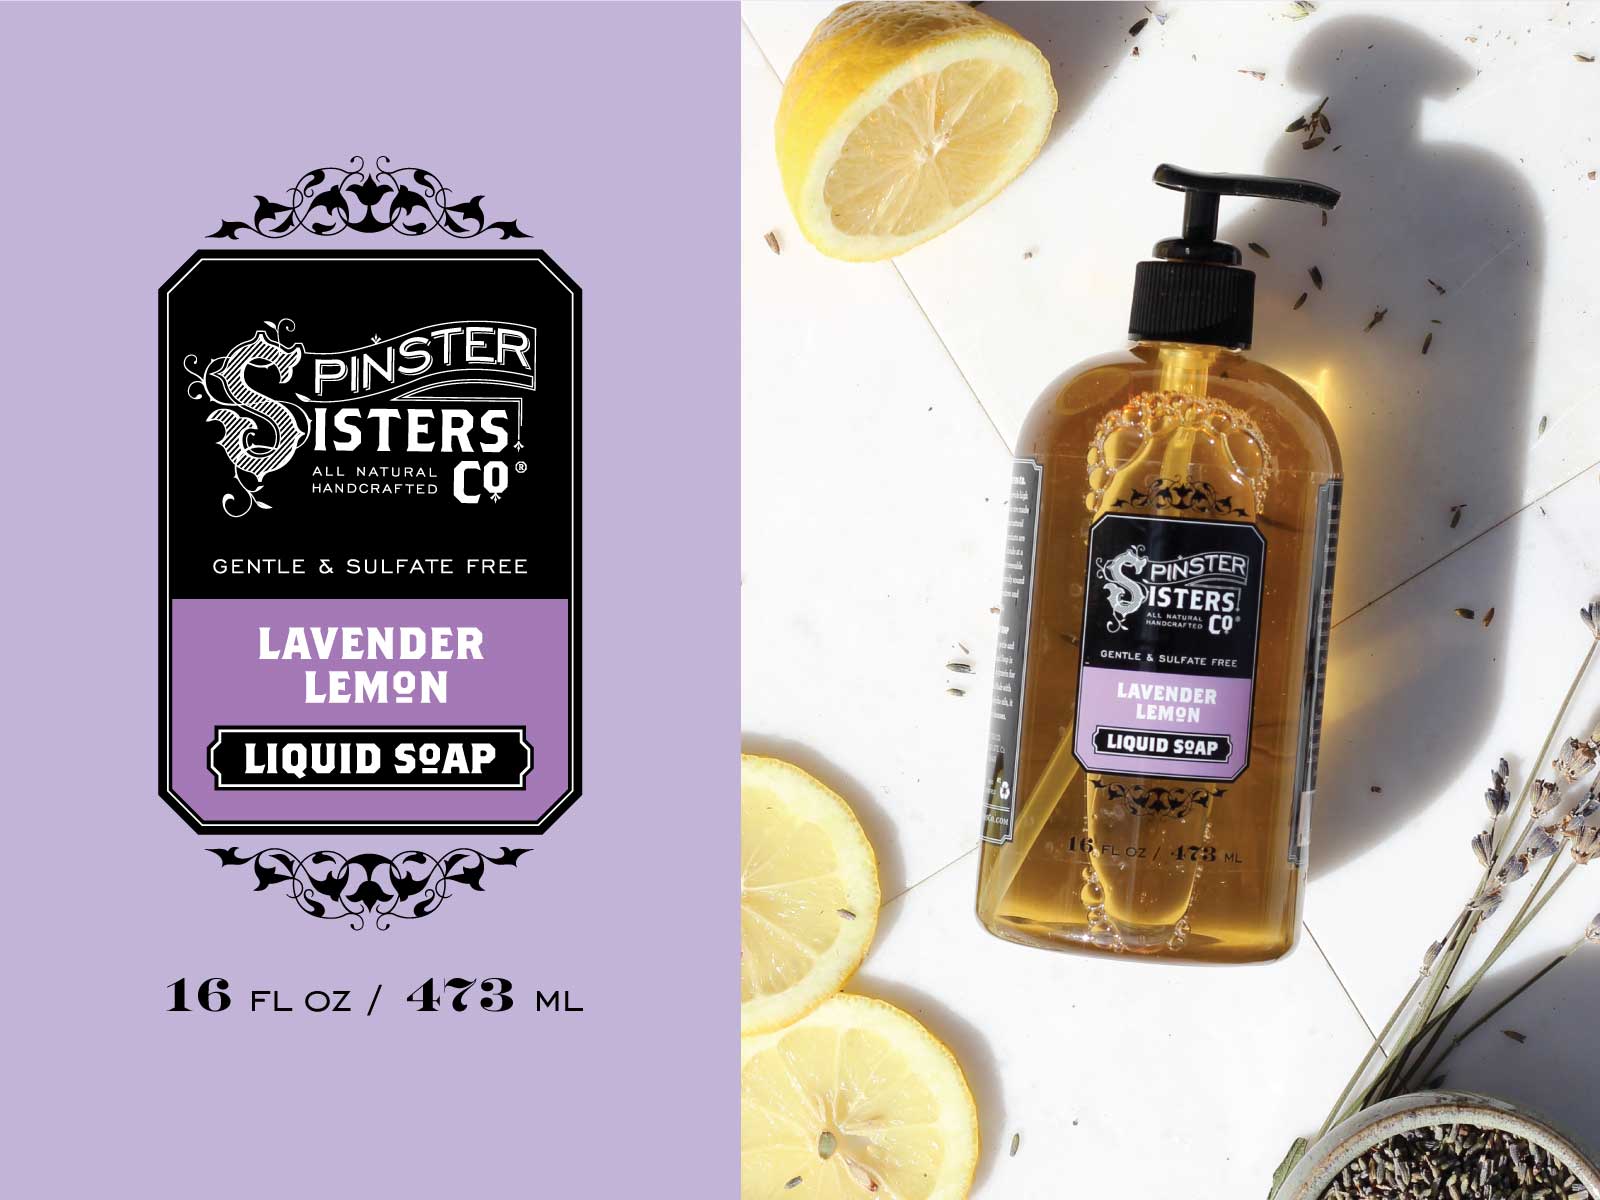 Lavender Lemon Liquid Soap label design and product image